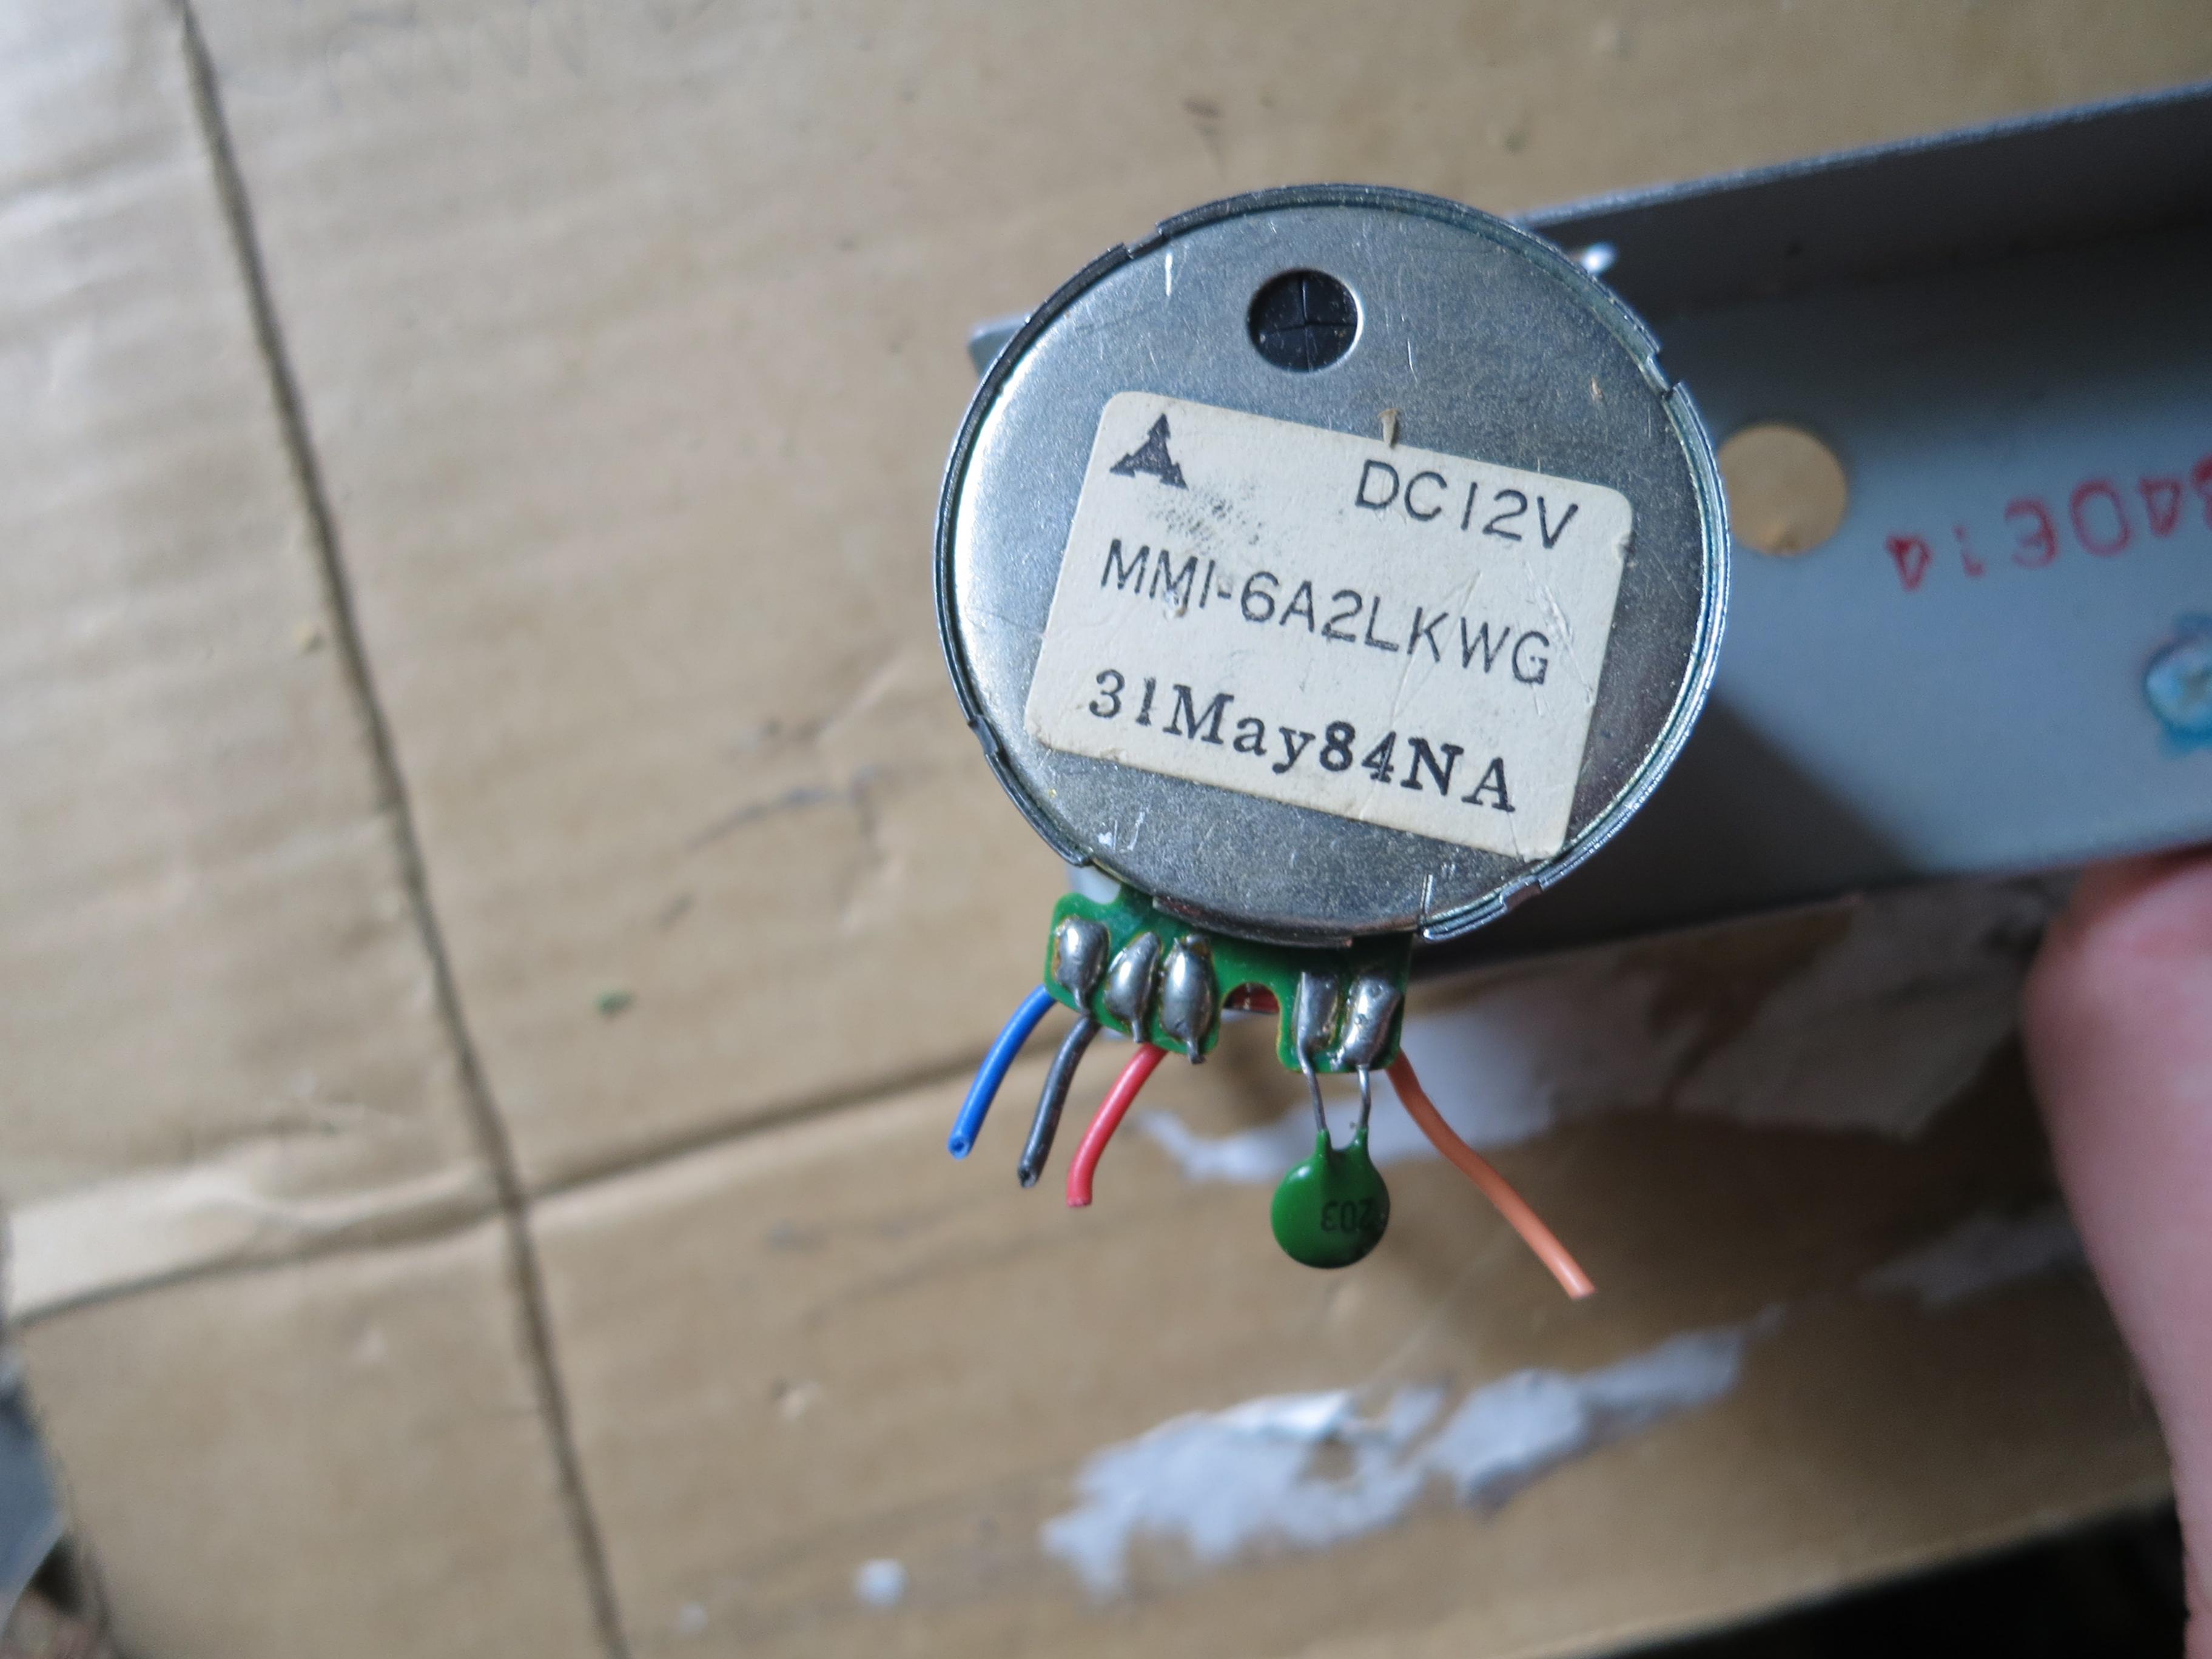 Cassette deck Mitsubishi motor wiring identification help needed | diyAudio